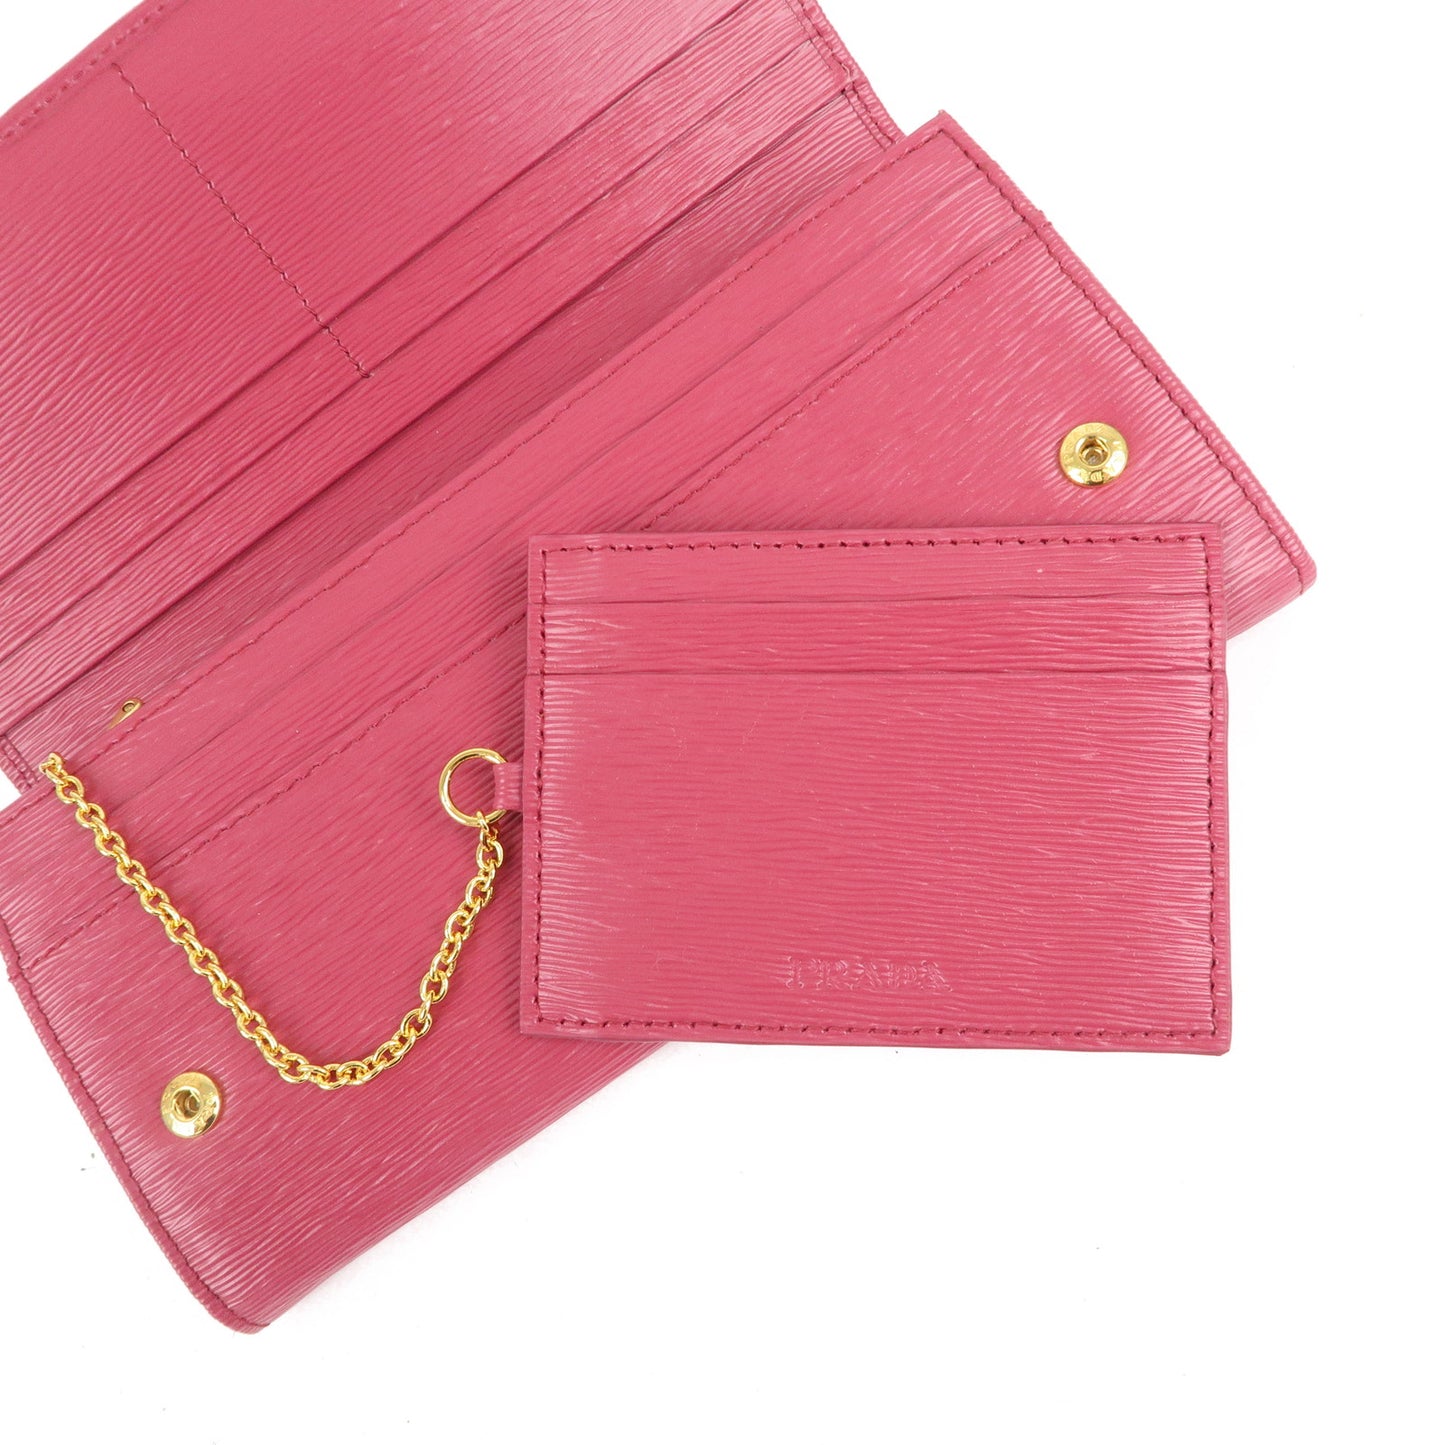 Prada Chain Card Case long wallet